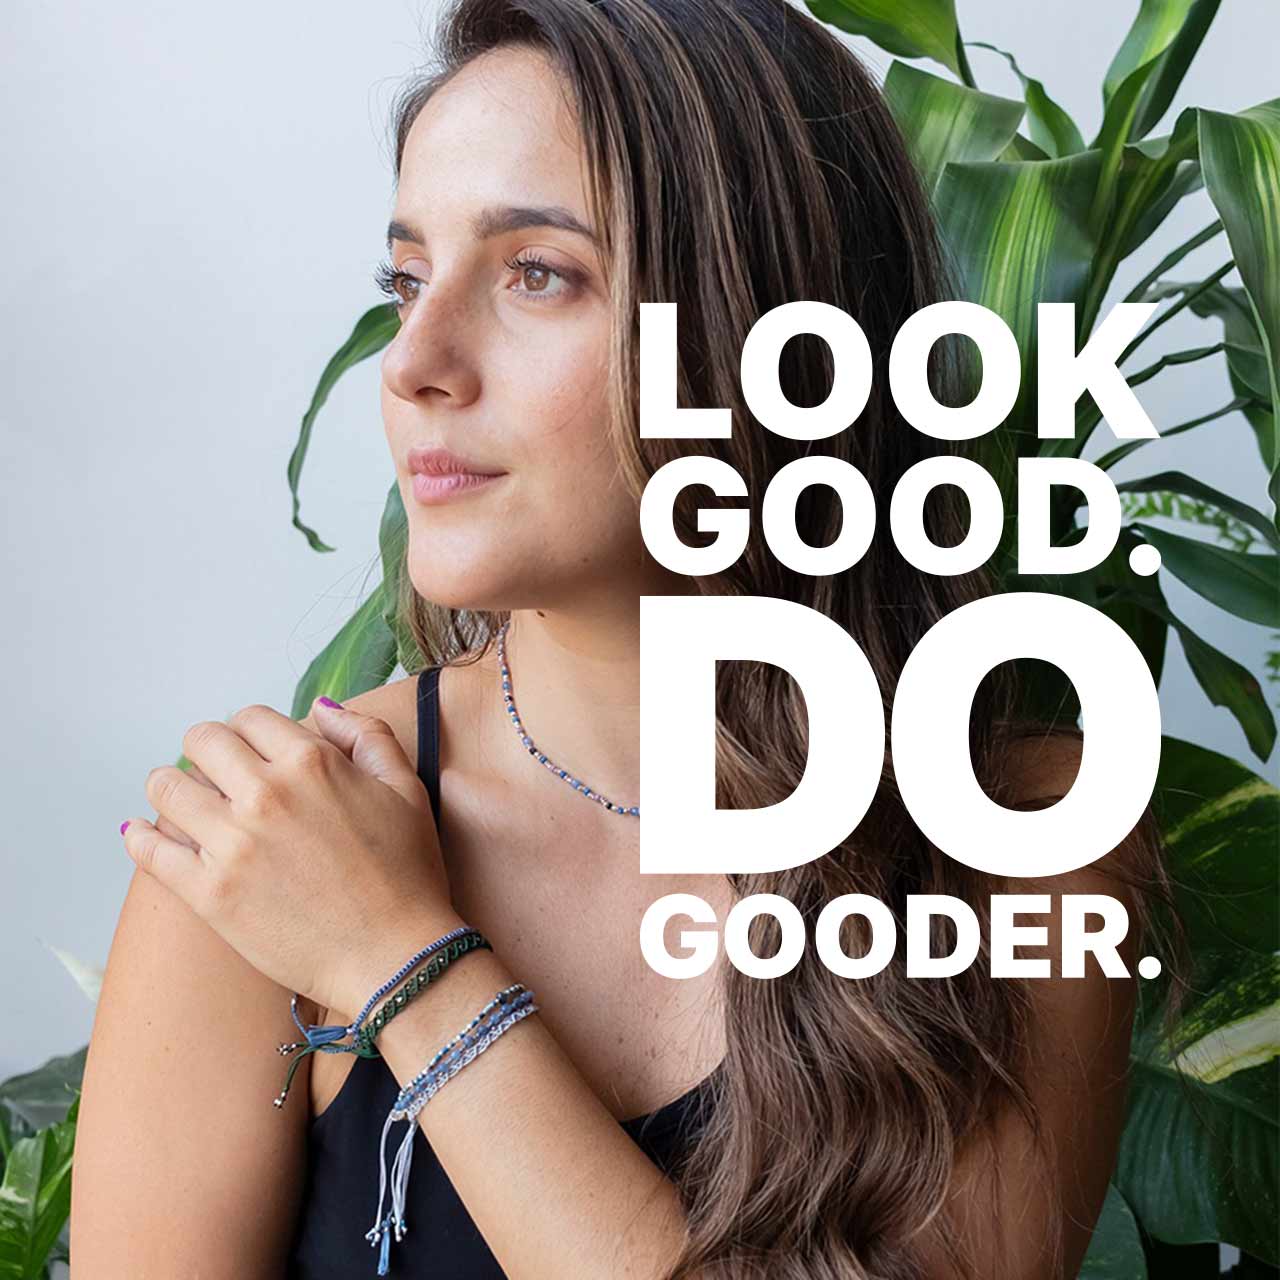 Look good. Do gooder.